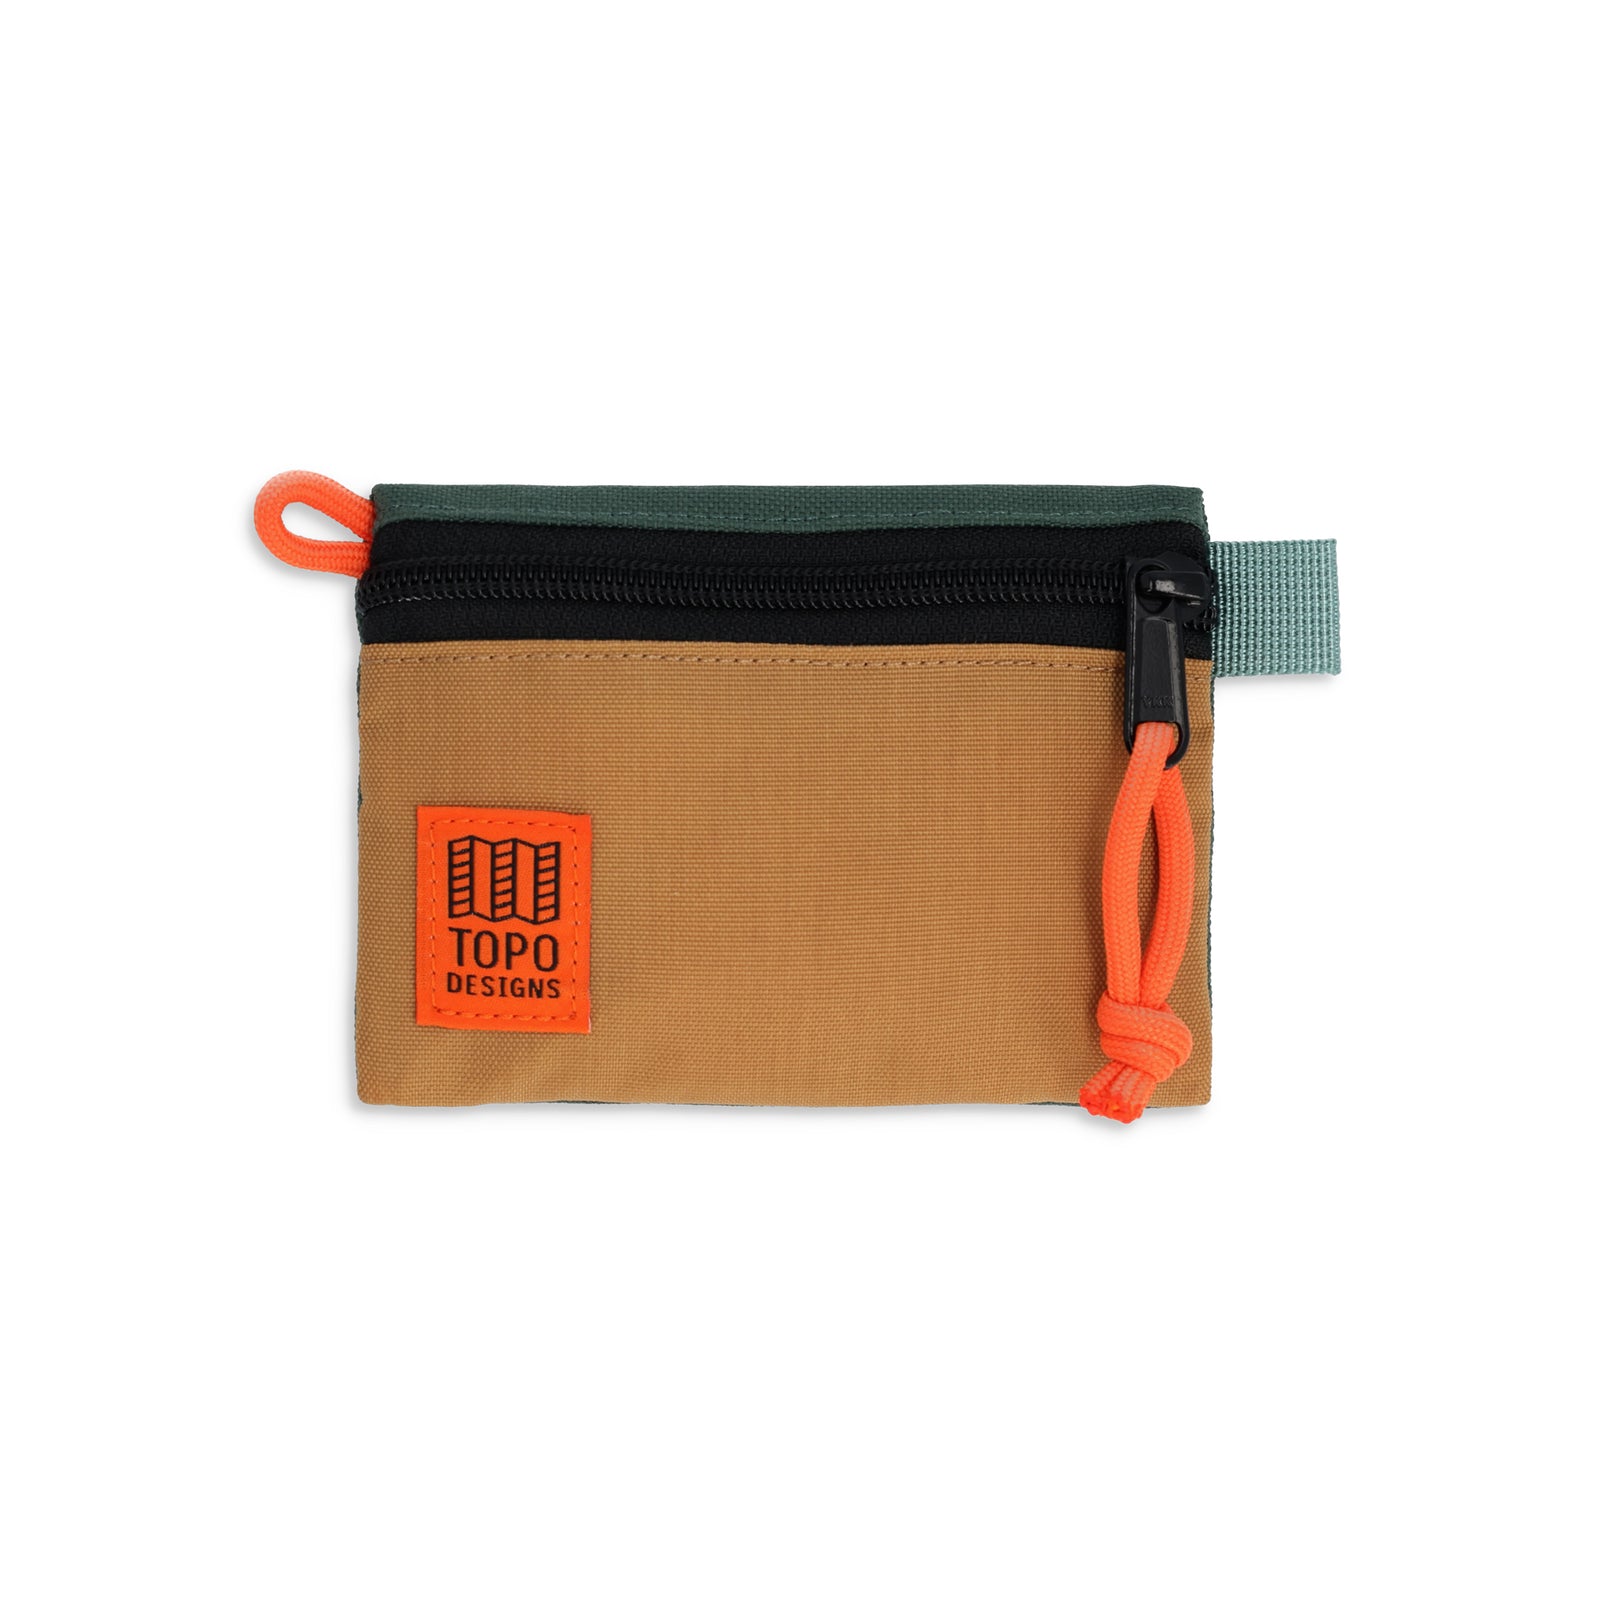 Topo Designs Accessory Bag micro in "Khaki / Forest"